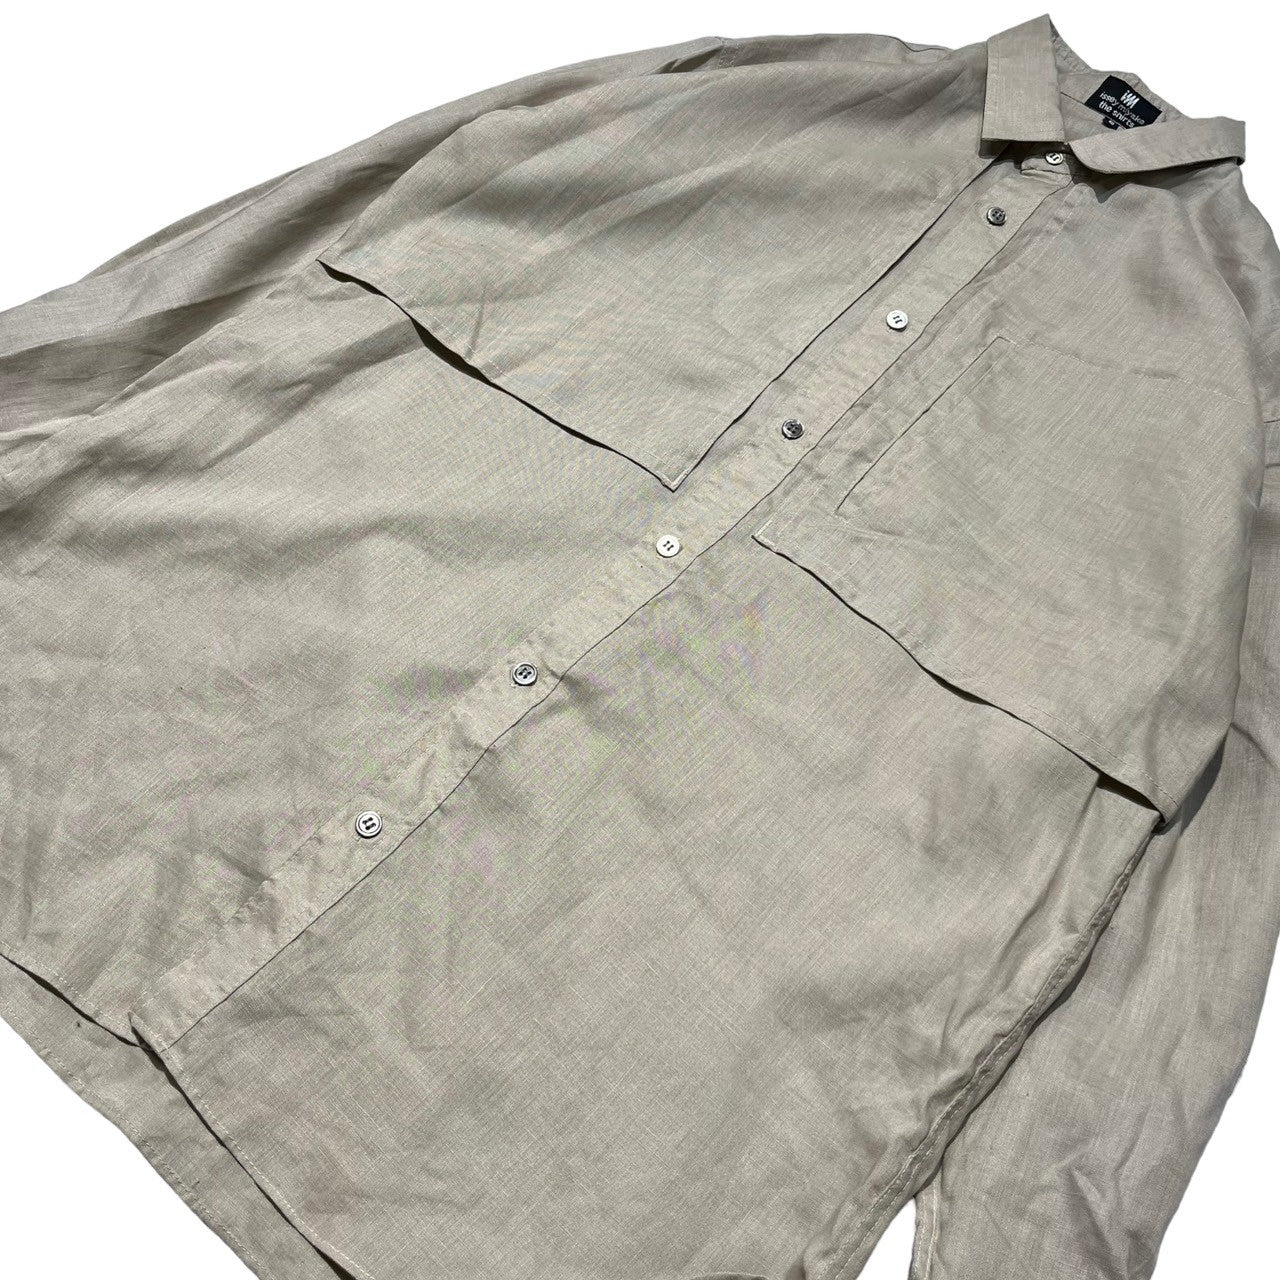 ISSEY MIYAKE(イッセイミヤケ) 80's ~ 90's  linen trench shirt リネン トレンチ シャツ ハミルトン社製 I67507-B S ベージュ 90年代 ヴィンテージ アーカイブ デッドストック